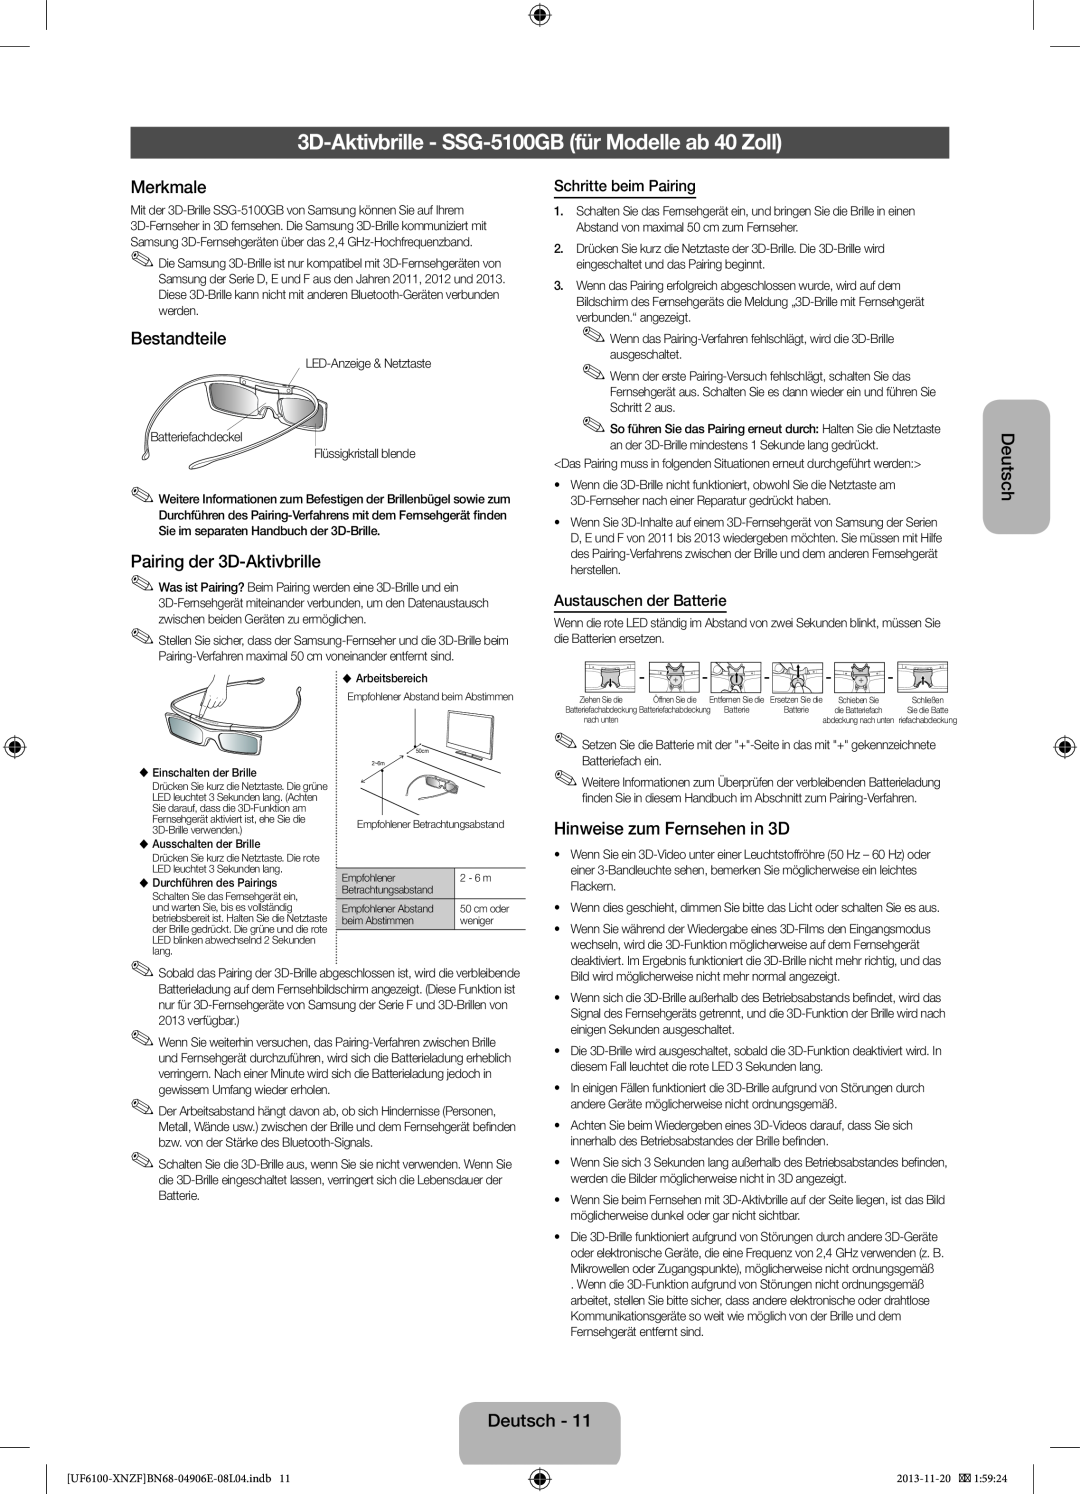 Samsung UE32F6100AWXZF manual 3D-Aktivbrille - SSG-5100GB für Modelle ab 40 Zoll, Pairing der 3D-Aktivbrille, Deutsch 